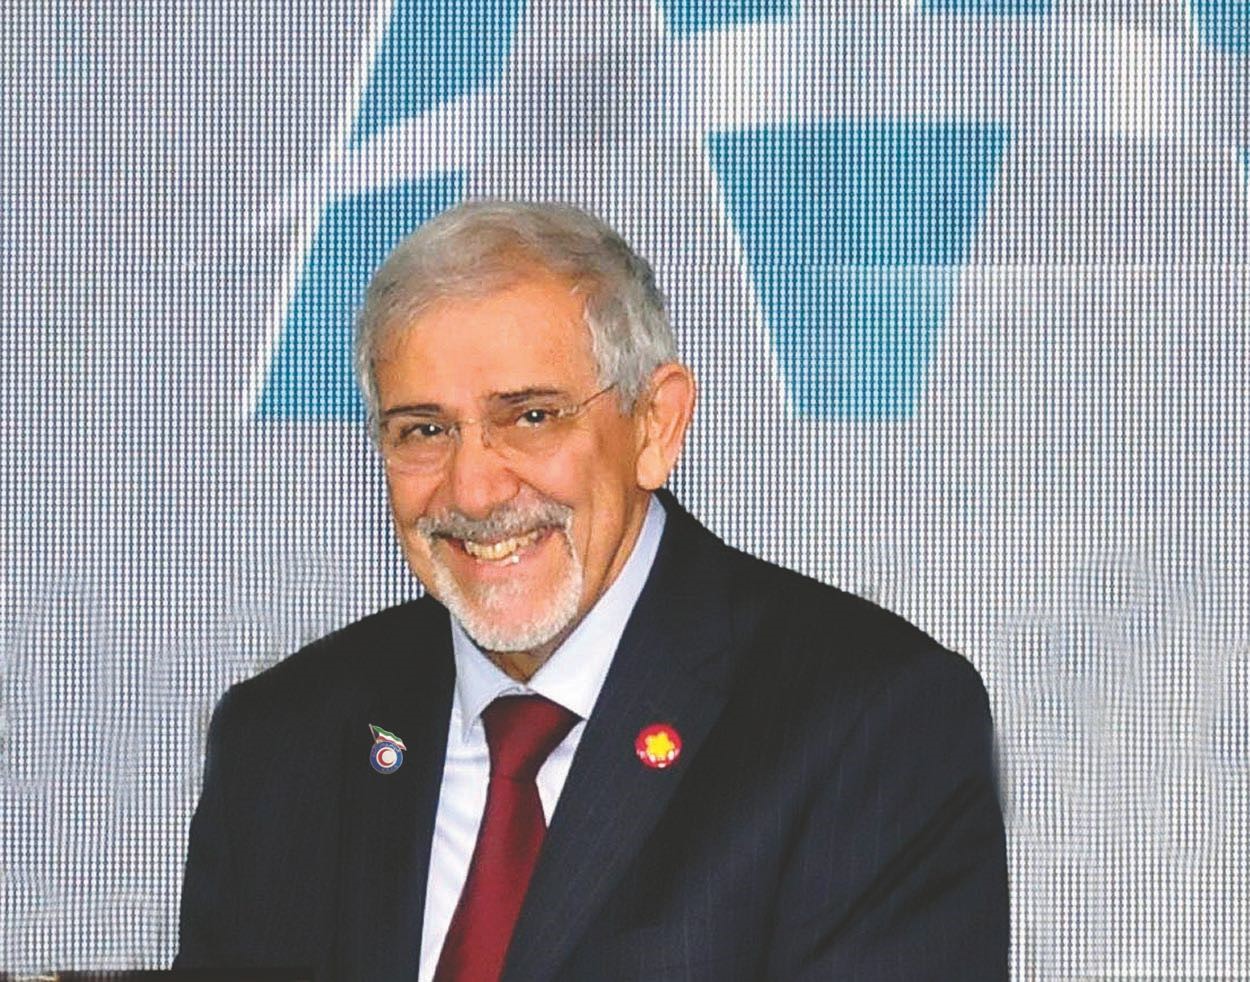 KRCS chairman Dr. Hilal Al-Sayer